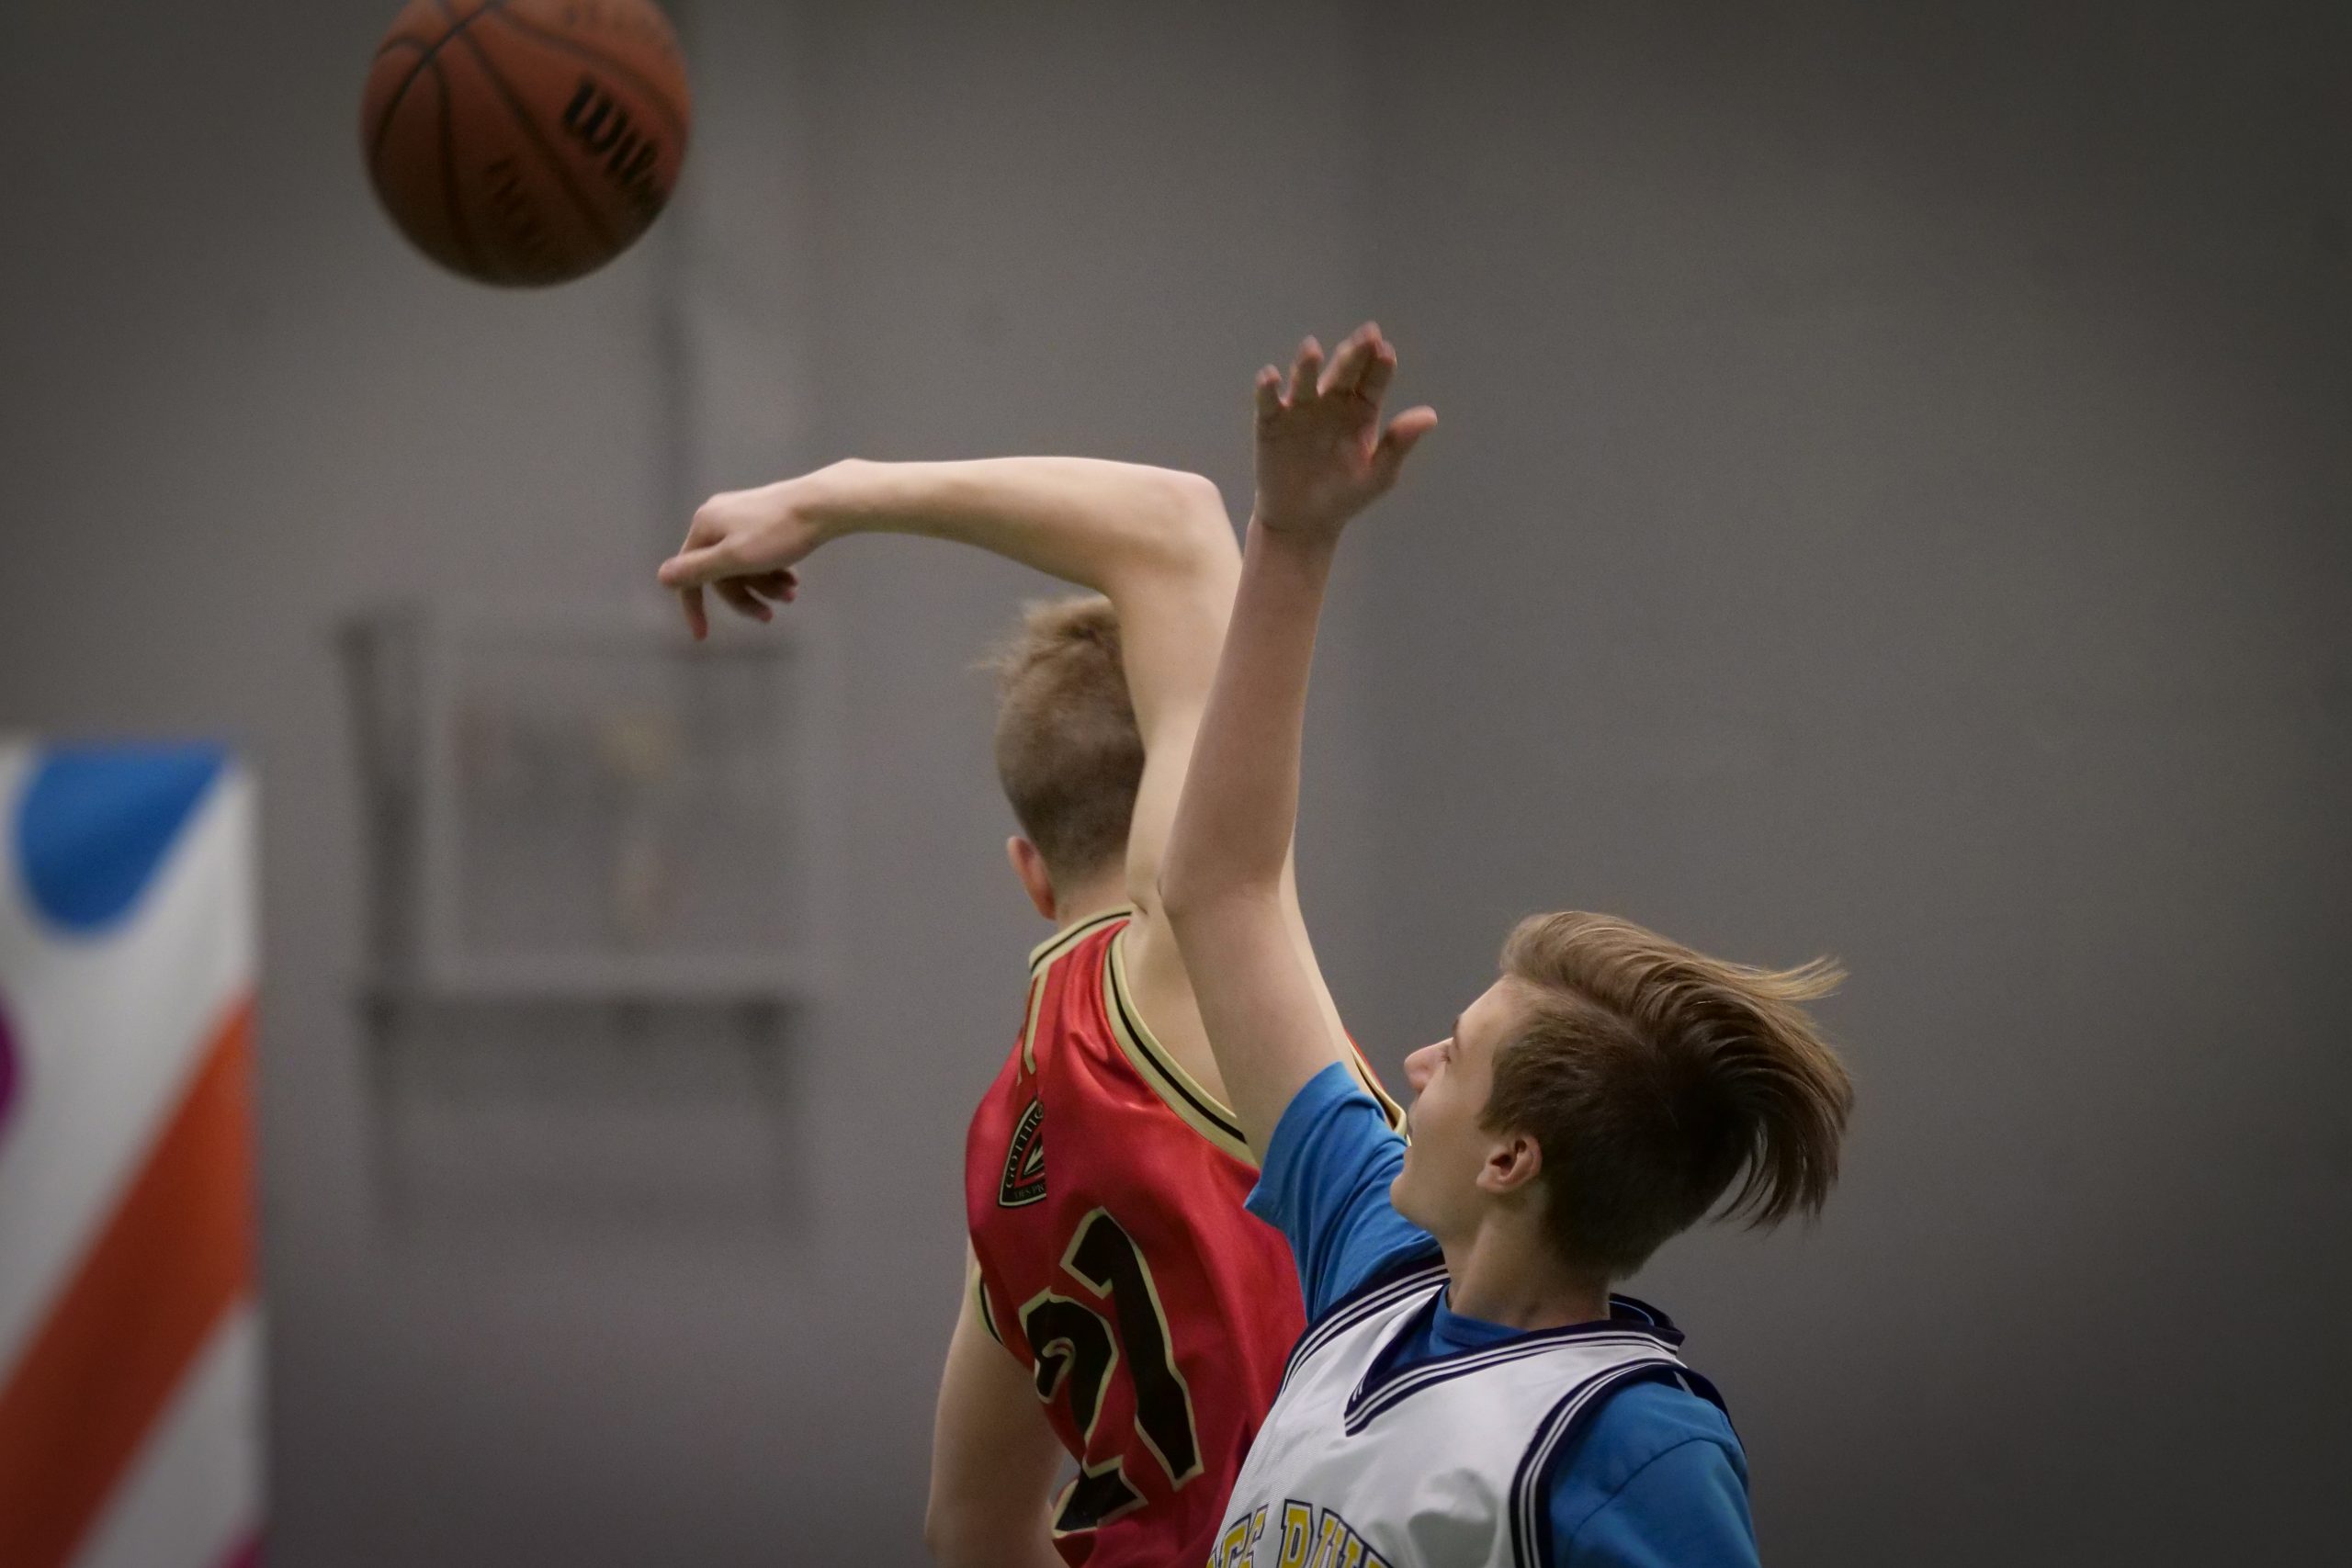 Description de l'image : Au centre, deux jeunes joueurs de basketball se disputent le ballon, qui est dans les airs.